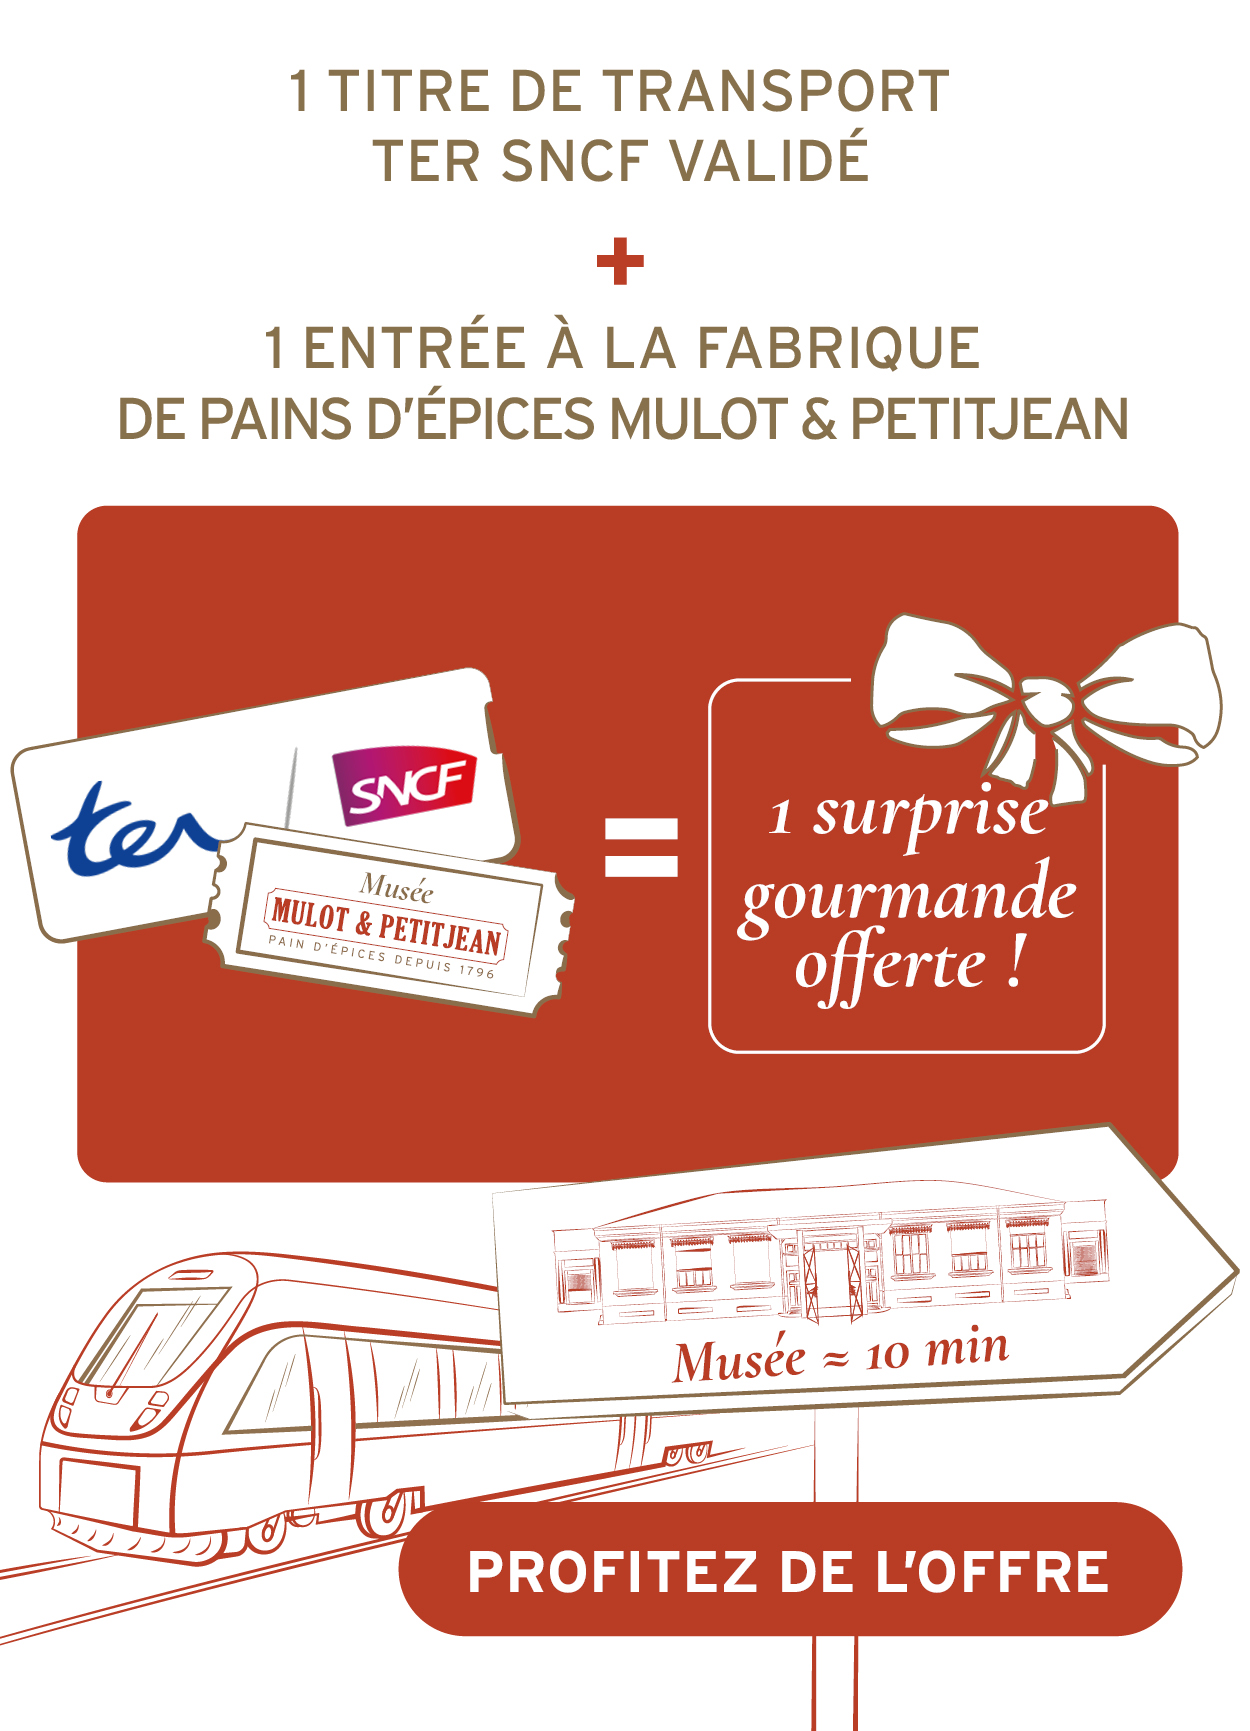 1 titre de transport TER SNCF validé + 1 entrée à la Fabrique de pains d’épices Mulot & Petitjean = 1 surprise gourmande